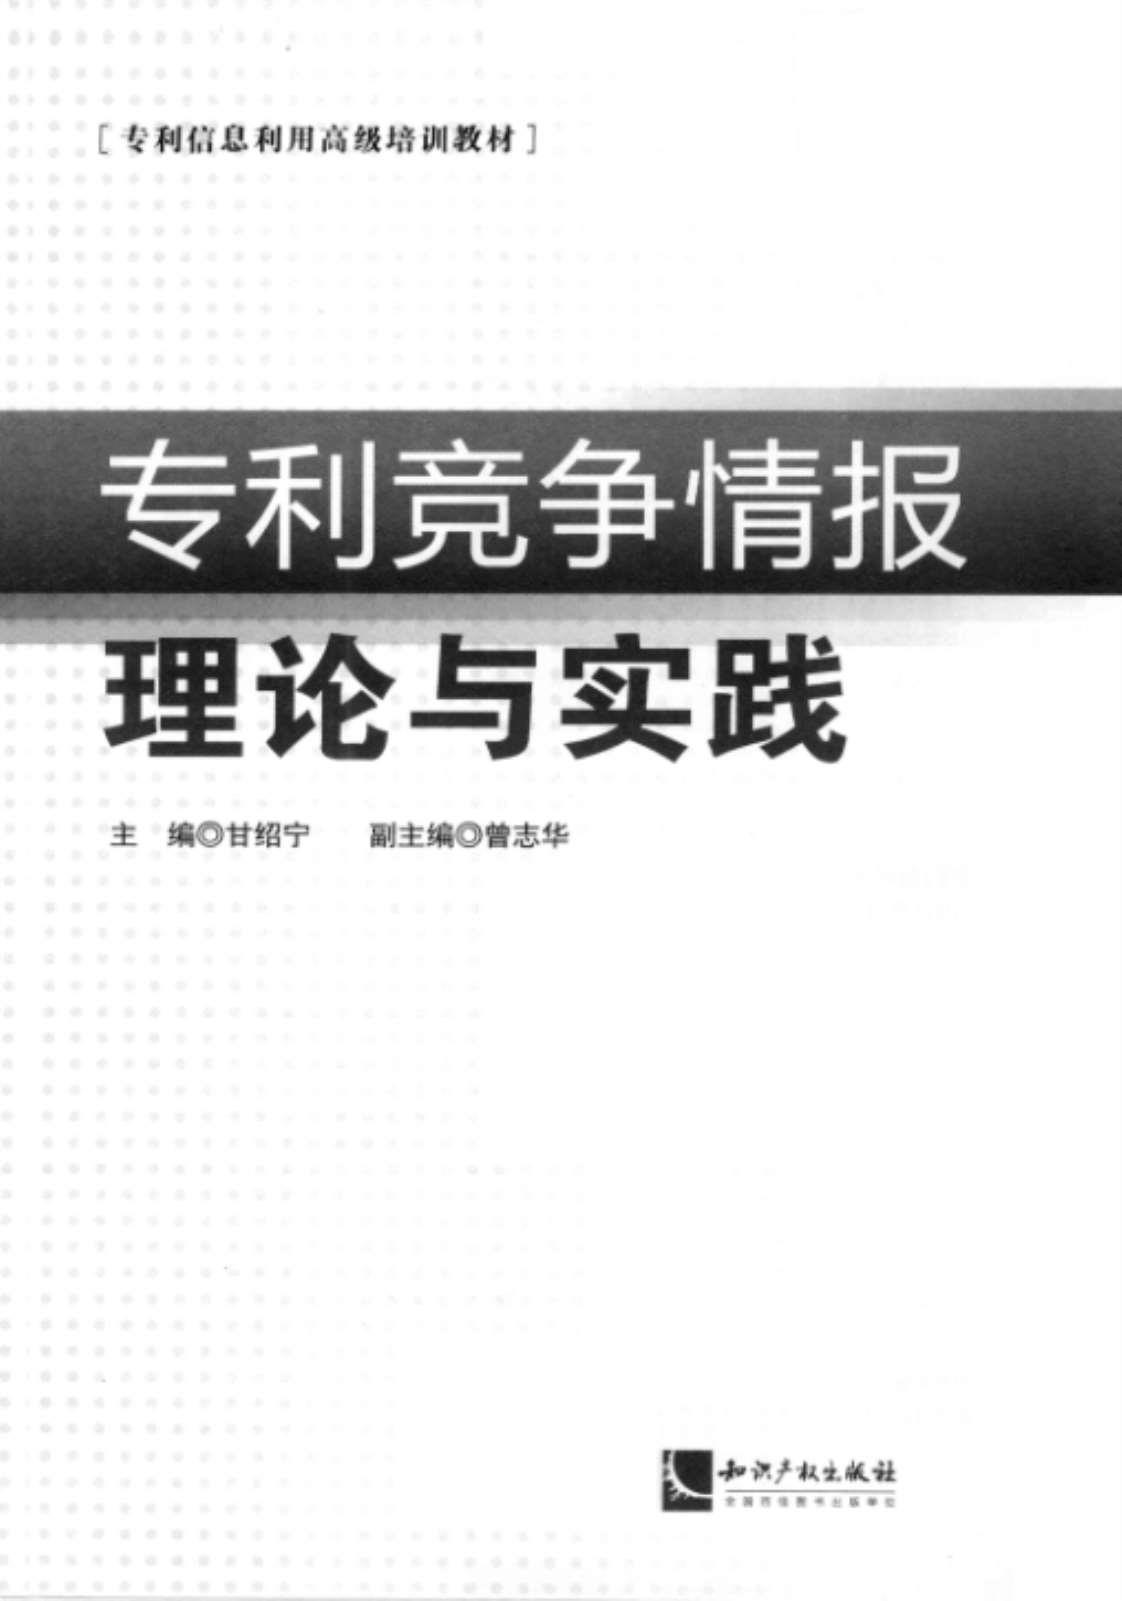 [专利竞争情报理论与实践][甘绍宁(主编)]高清PDF电子书下载